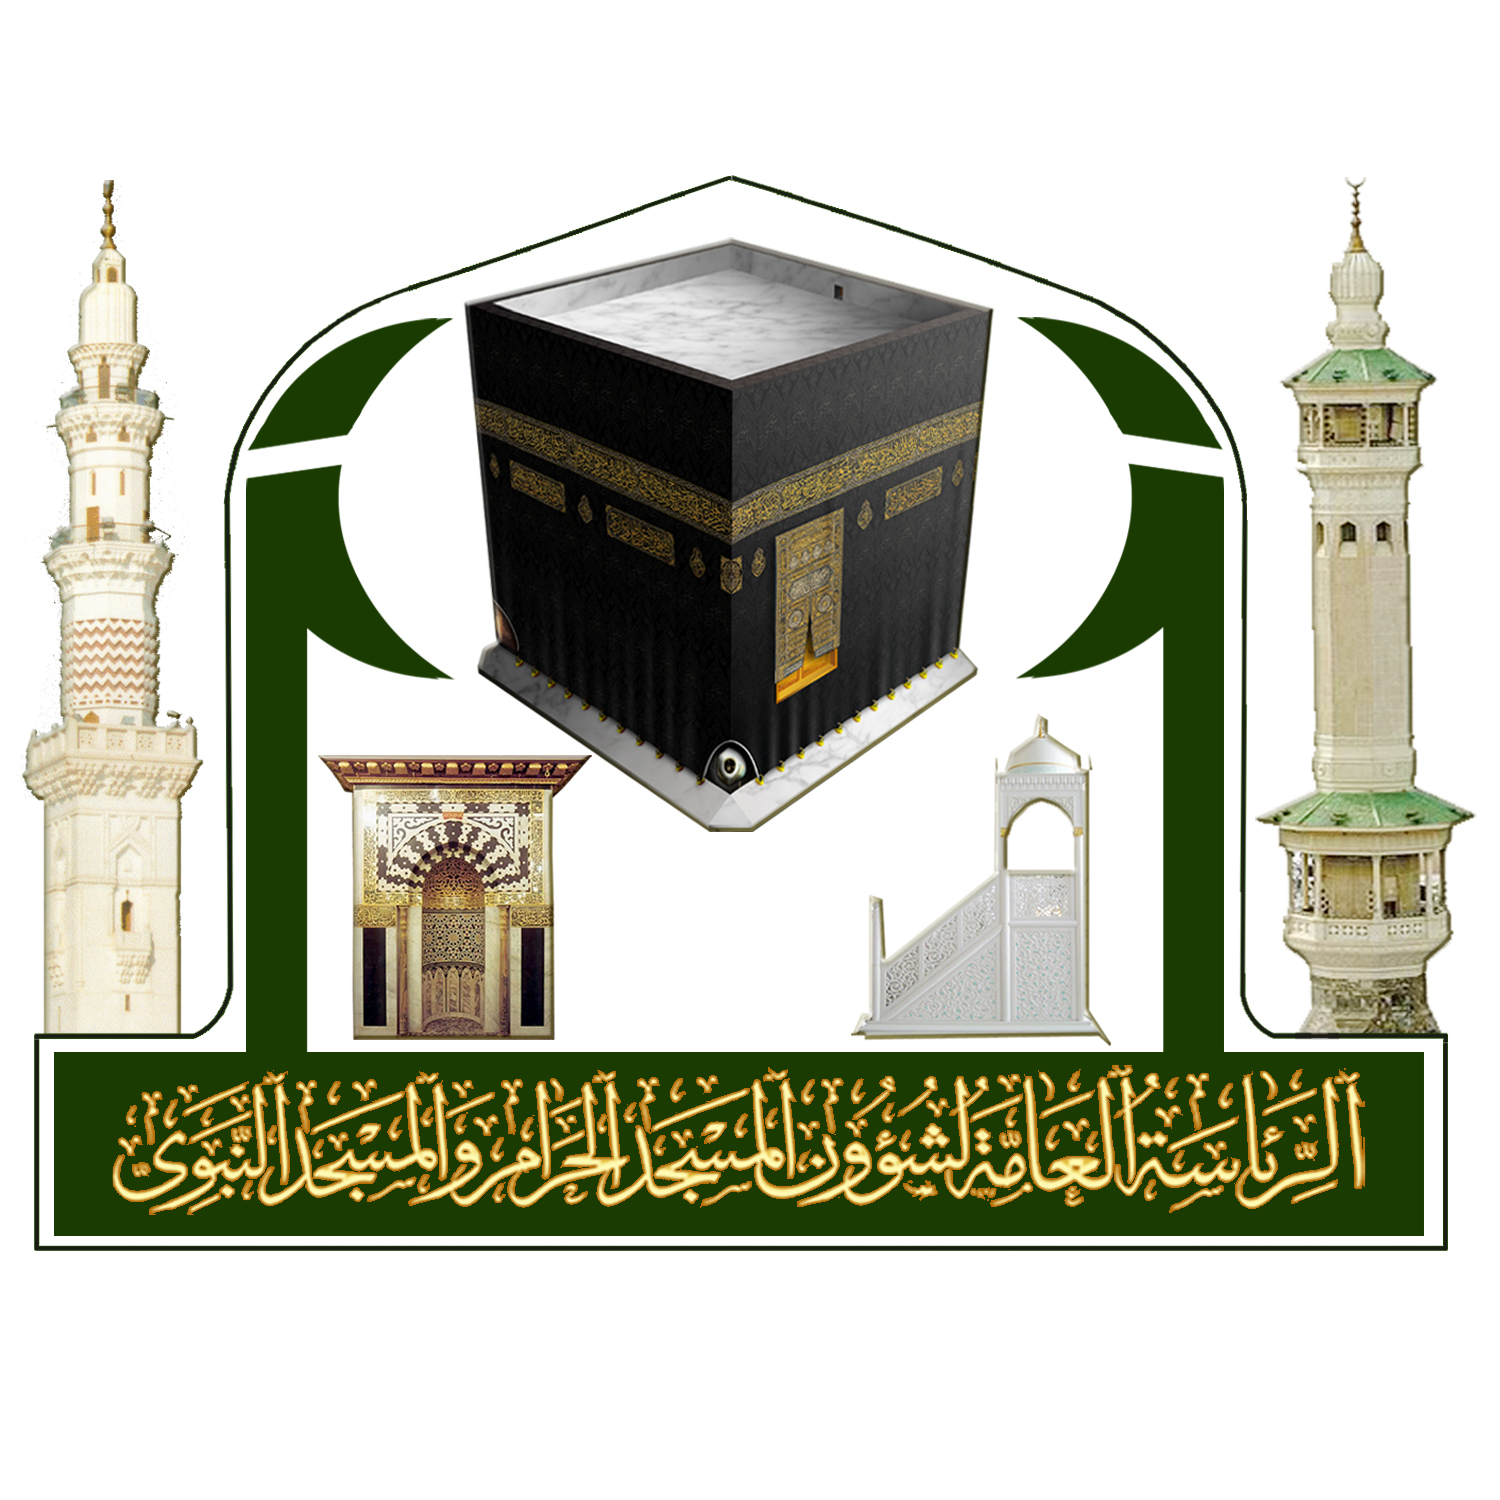 فتح باب التوظيف الموسمي لموسم رمضان والحج 1438هـ بالمسجد النبوي